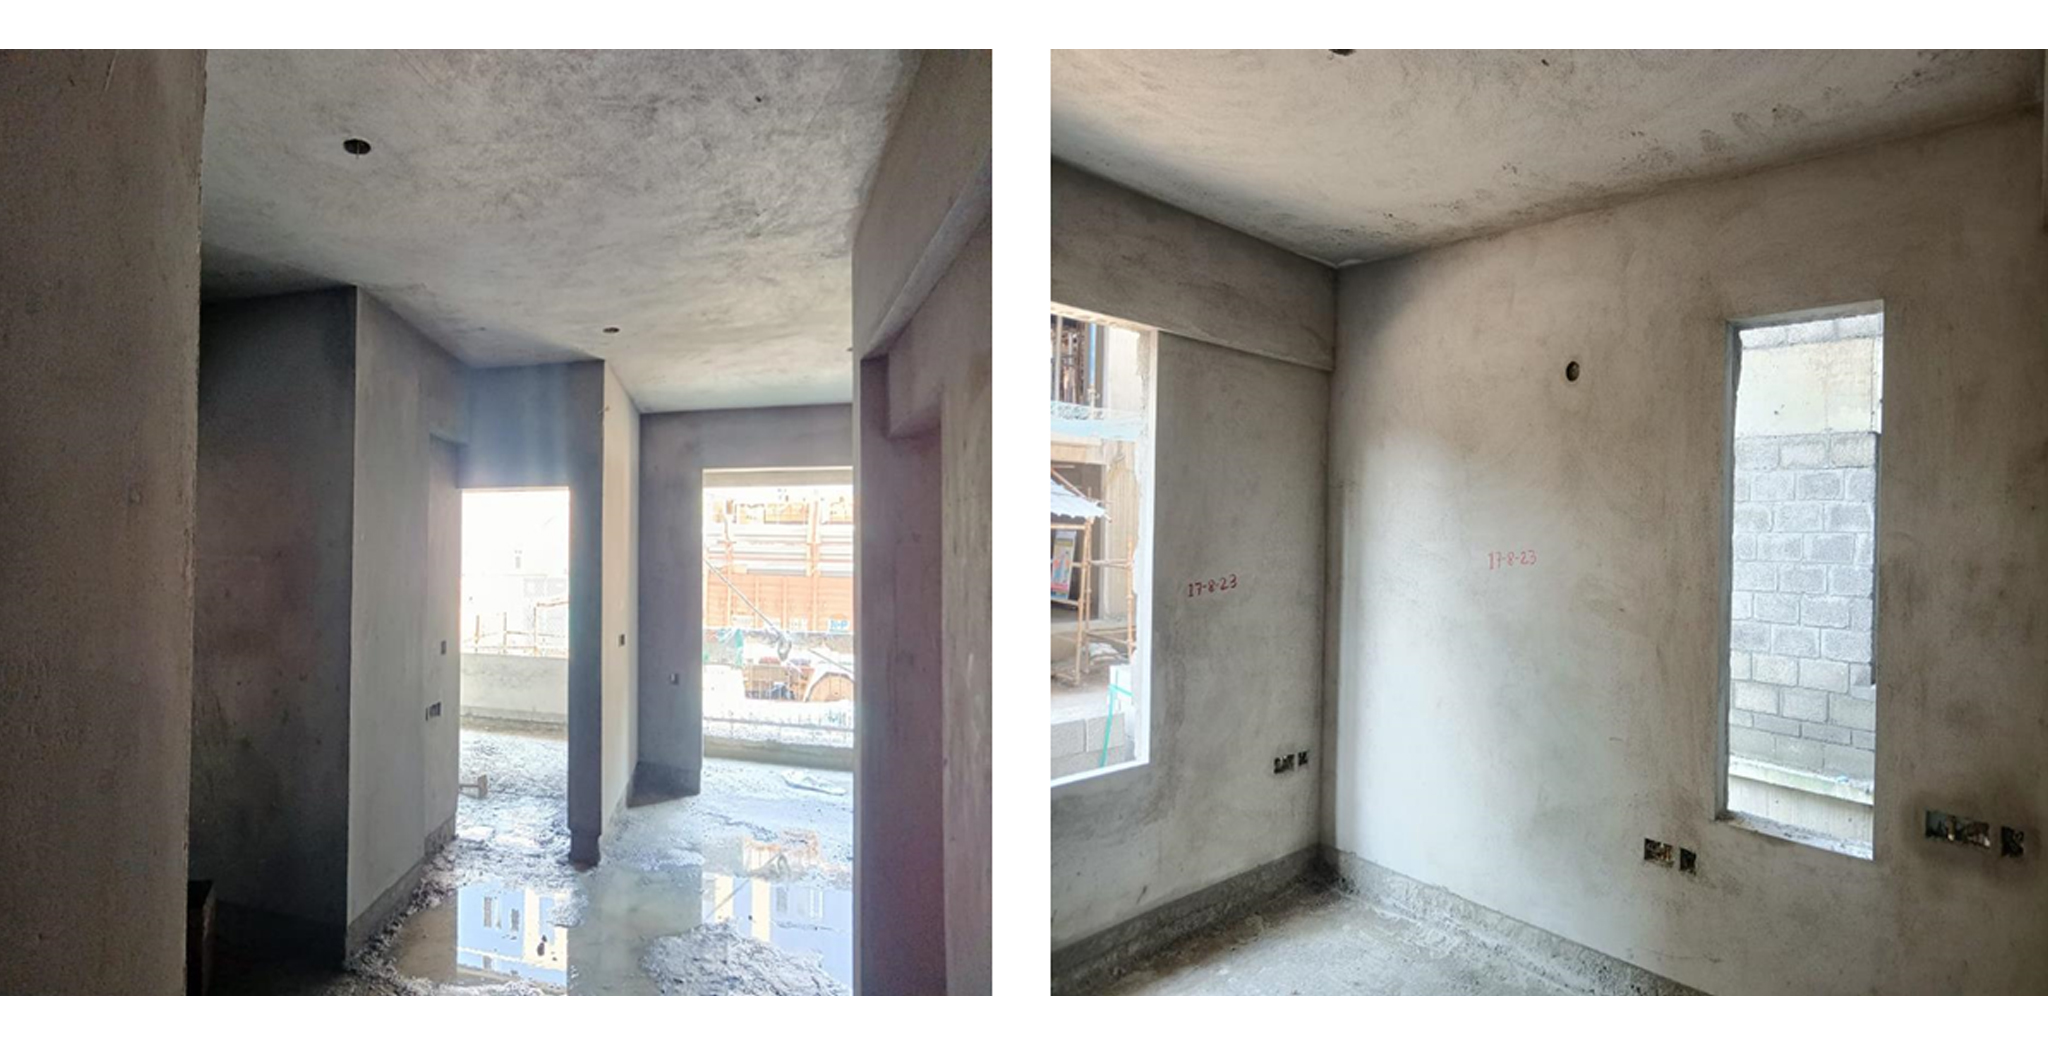 Brigade Xanadu Celeste Block N : Internal Wall & Ceiling plastering works are in progress – Status as of August 2023